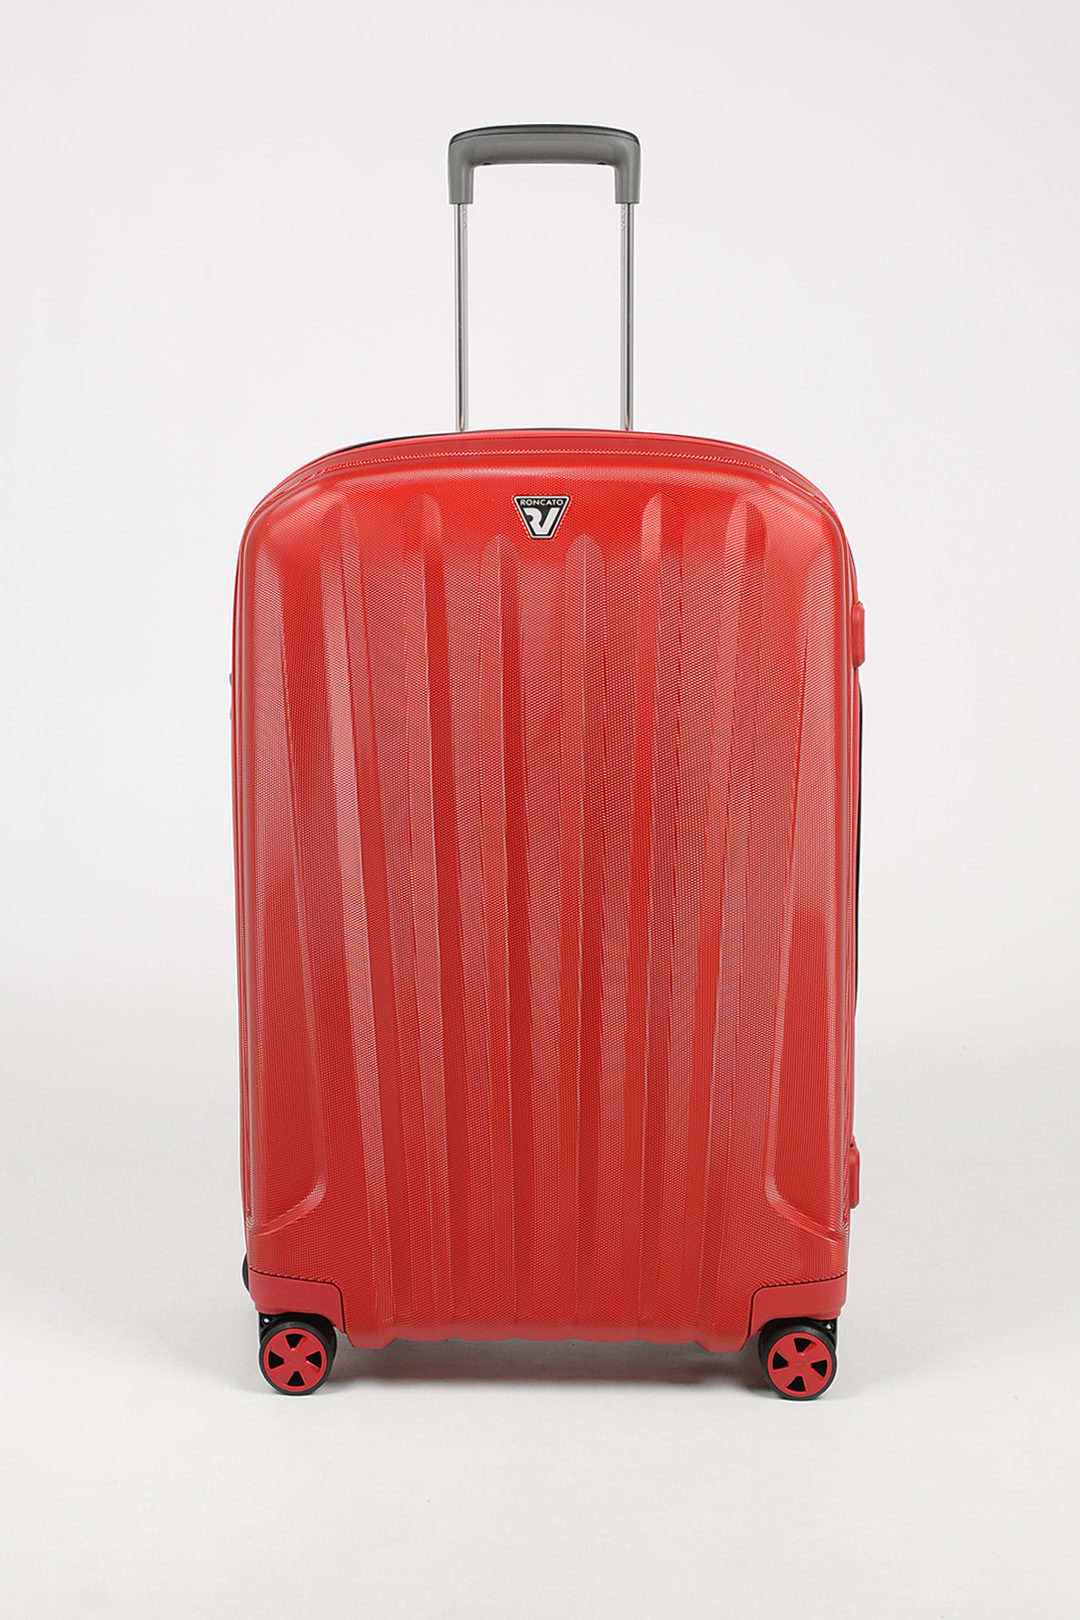 Roncato Unica trolley valigia grande da stiva 72 cm, rubino Rosso